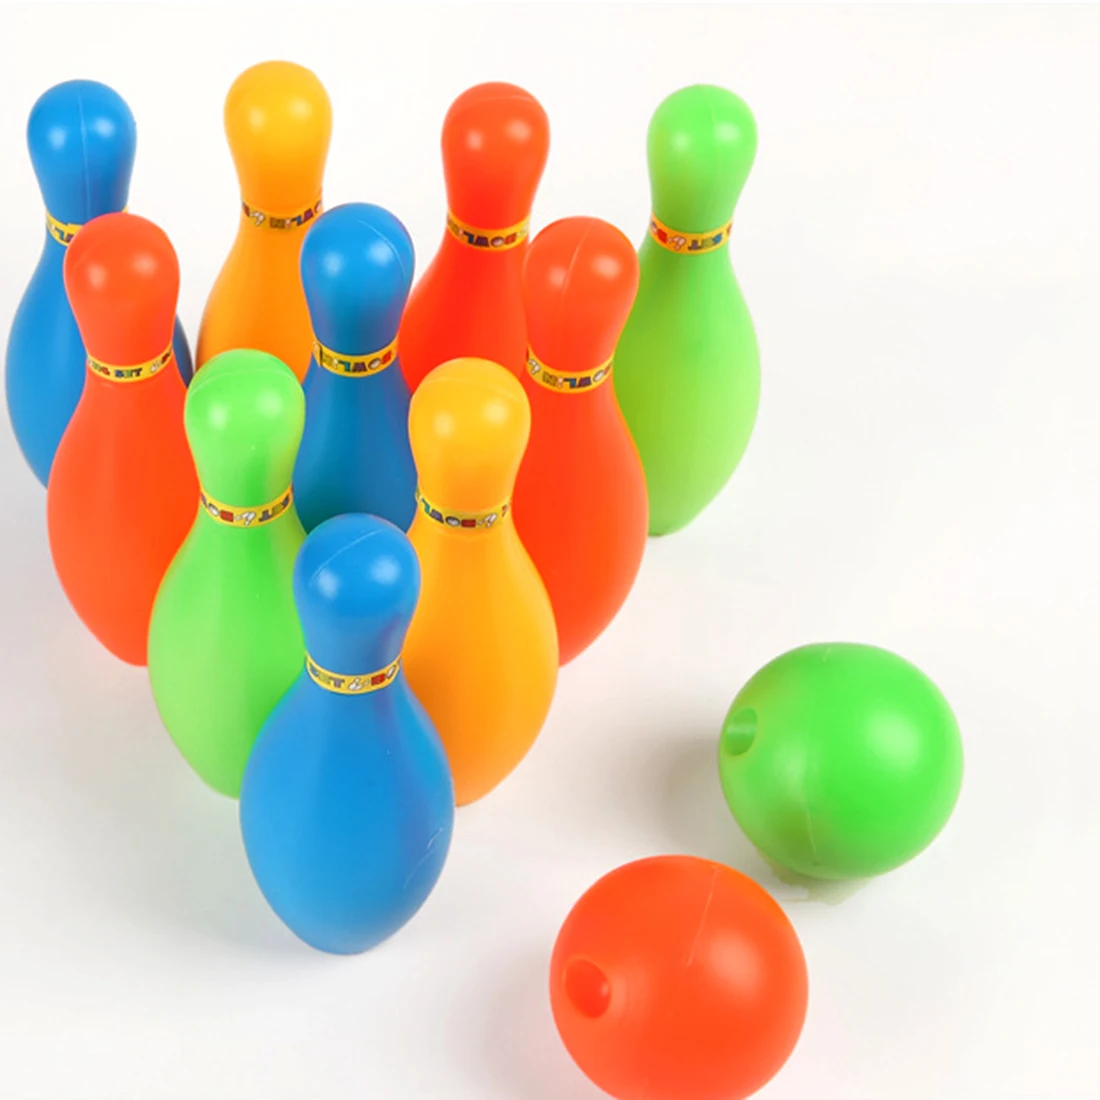 11 см Высота Детские пластиковые боулинг набор открытый мини взаимодействие Досуг развивающие игрушки с мячом и булавки